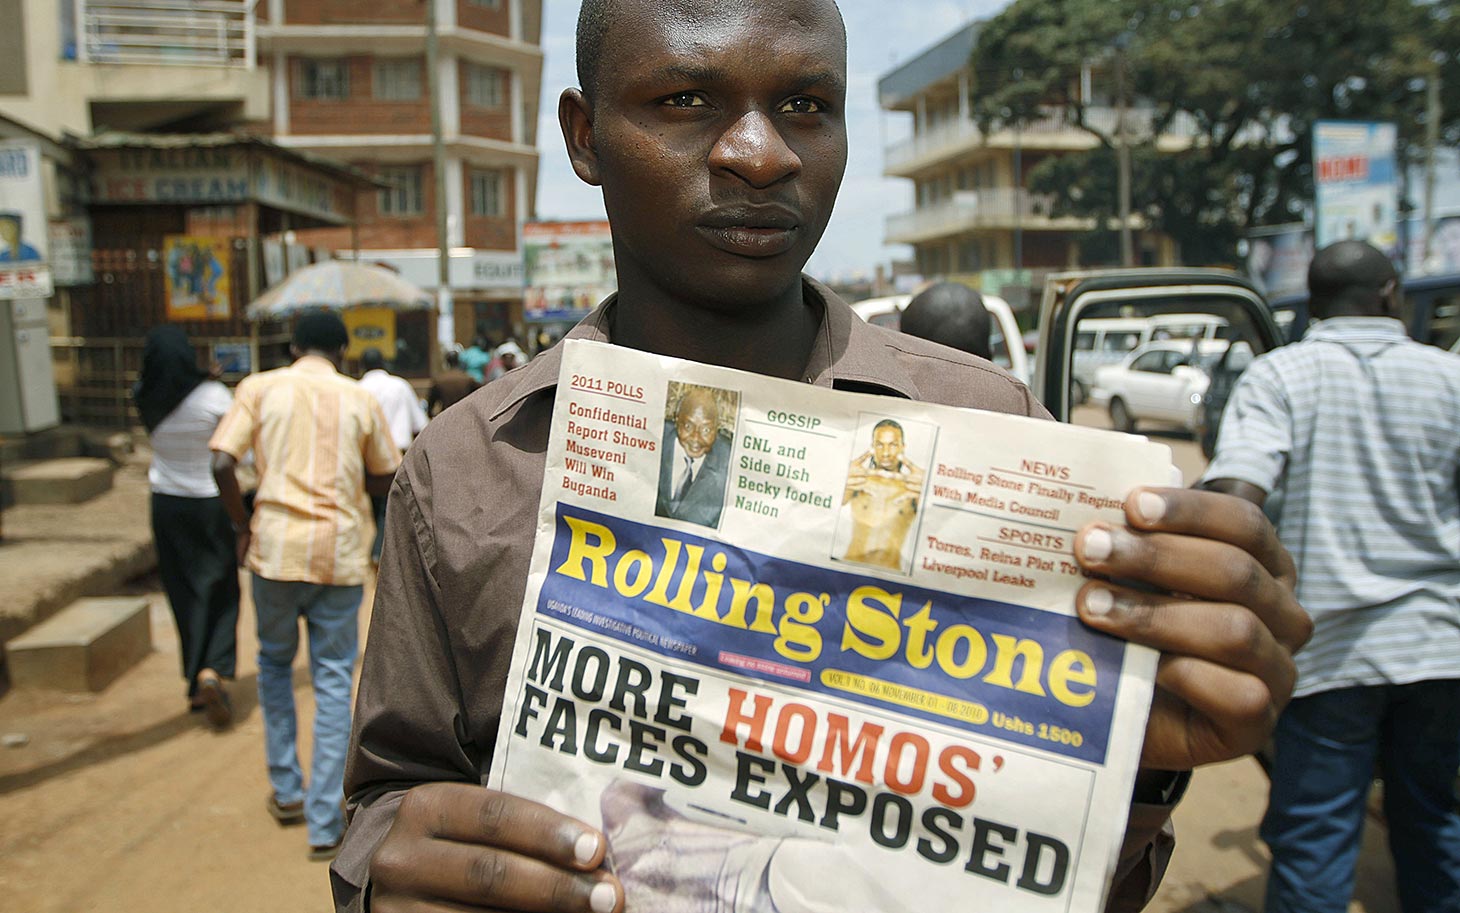 Il presidente dell'Uganda: "Una nuova legge omofoba? Non è necessaria" - uganda gays 011014 - Gay.it Archivio